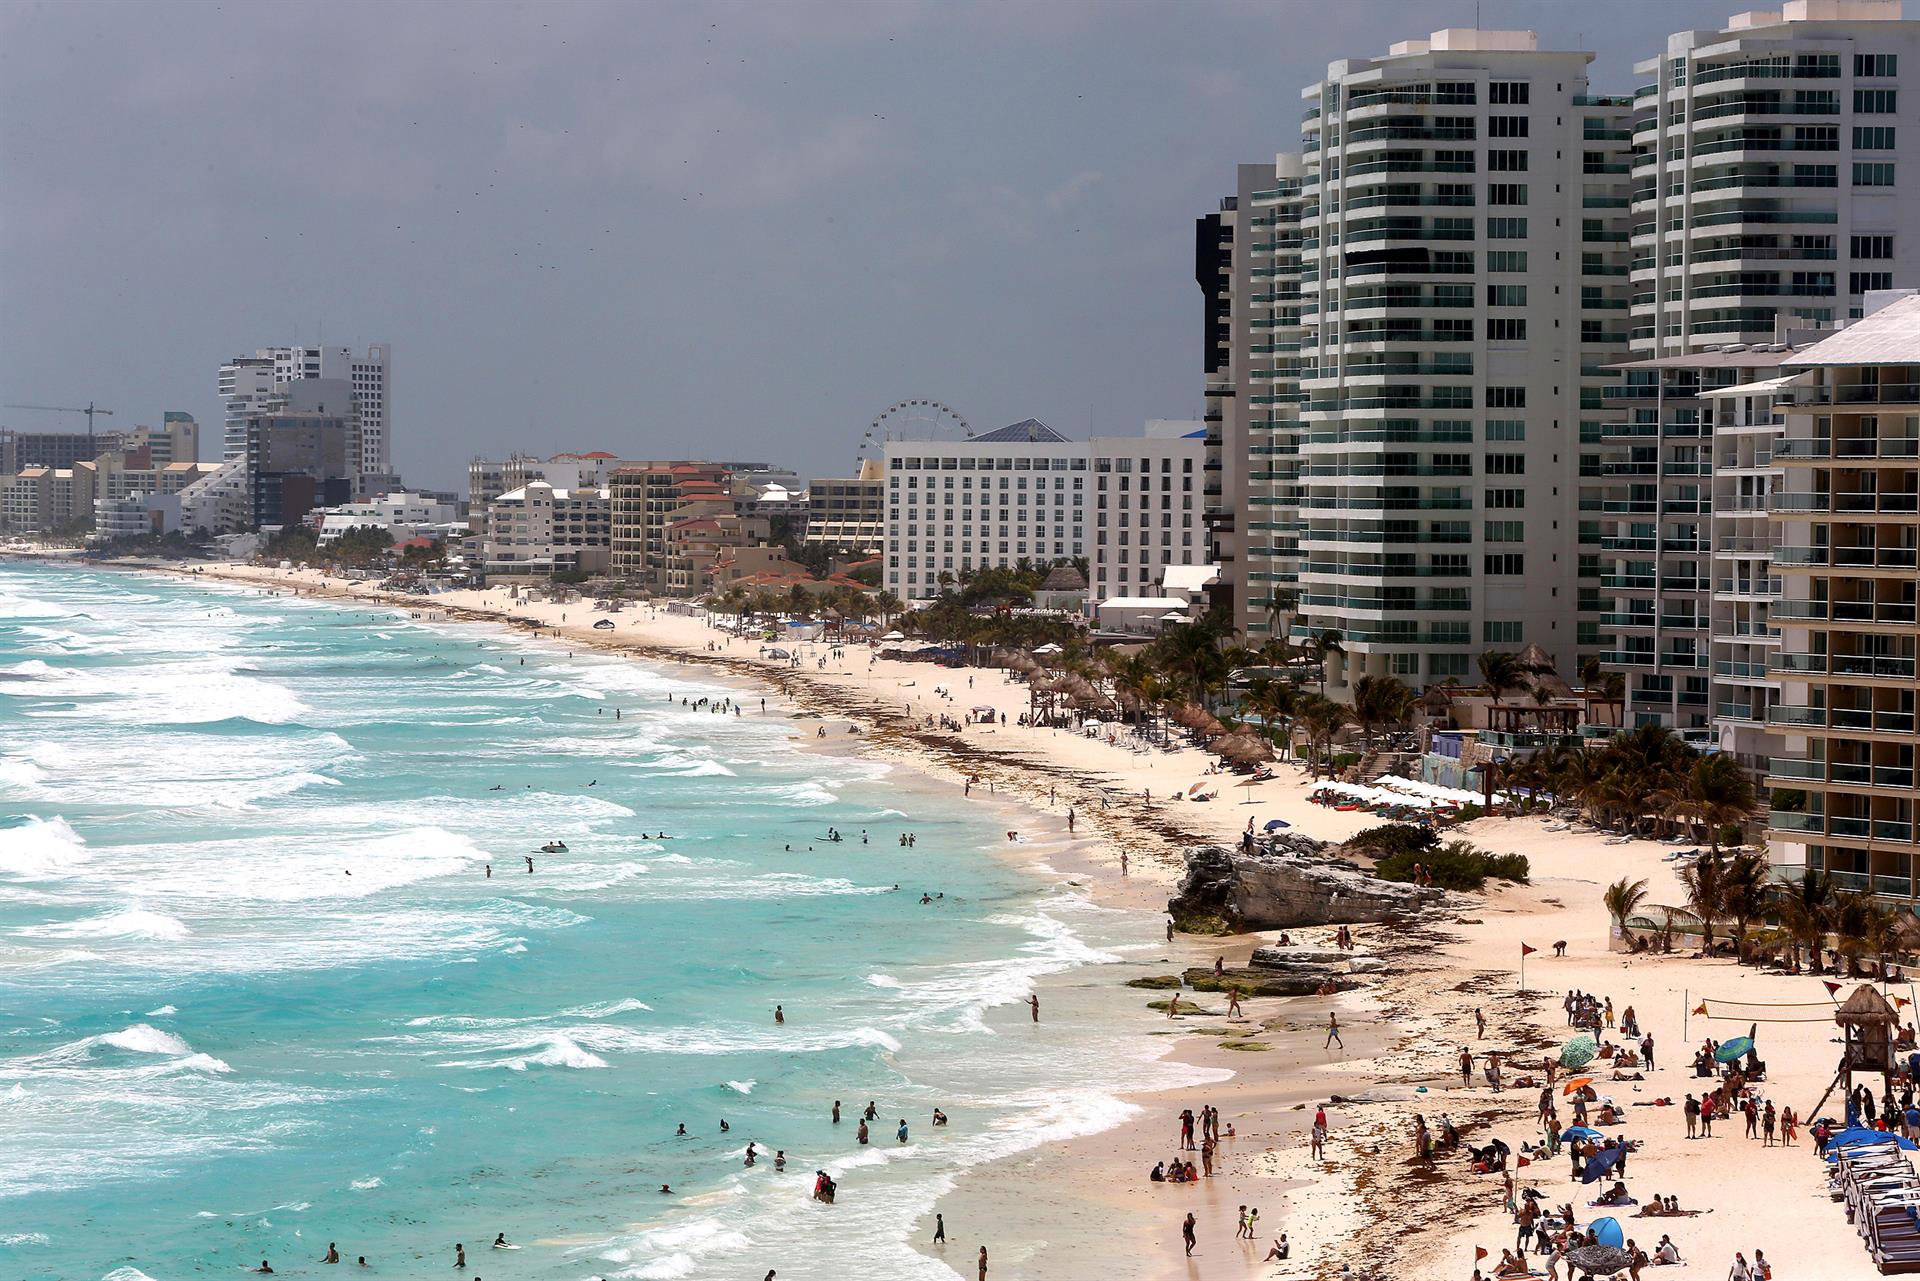 Turistas disfrutan en una playa del caribe mexicano, el 15 de abril de 2022, en el balneario de Cancún, estado de Quintana Roo (México). EFE/Alonso Cupul
